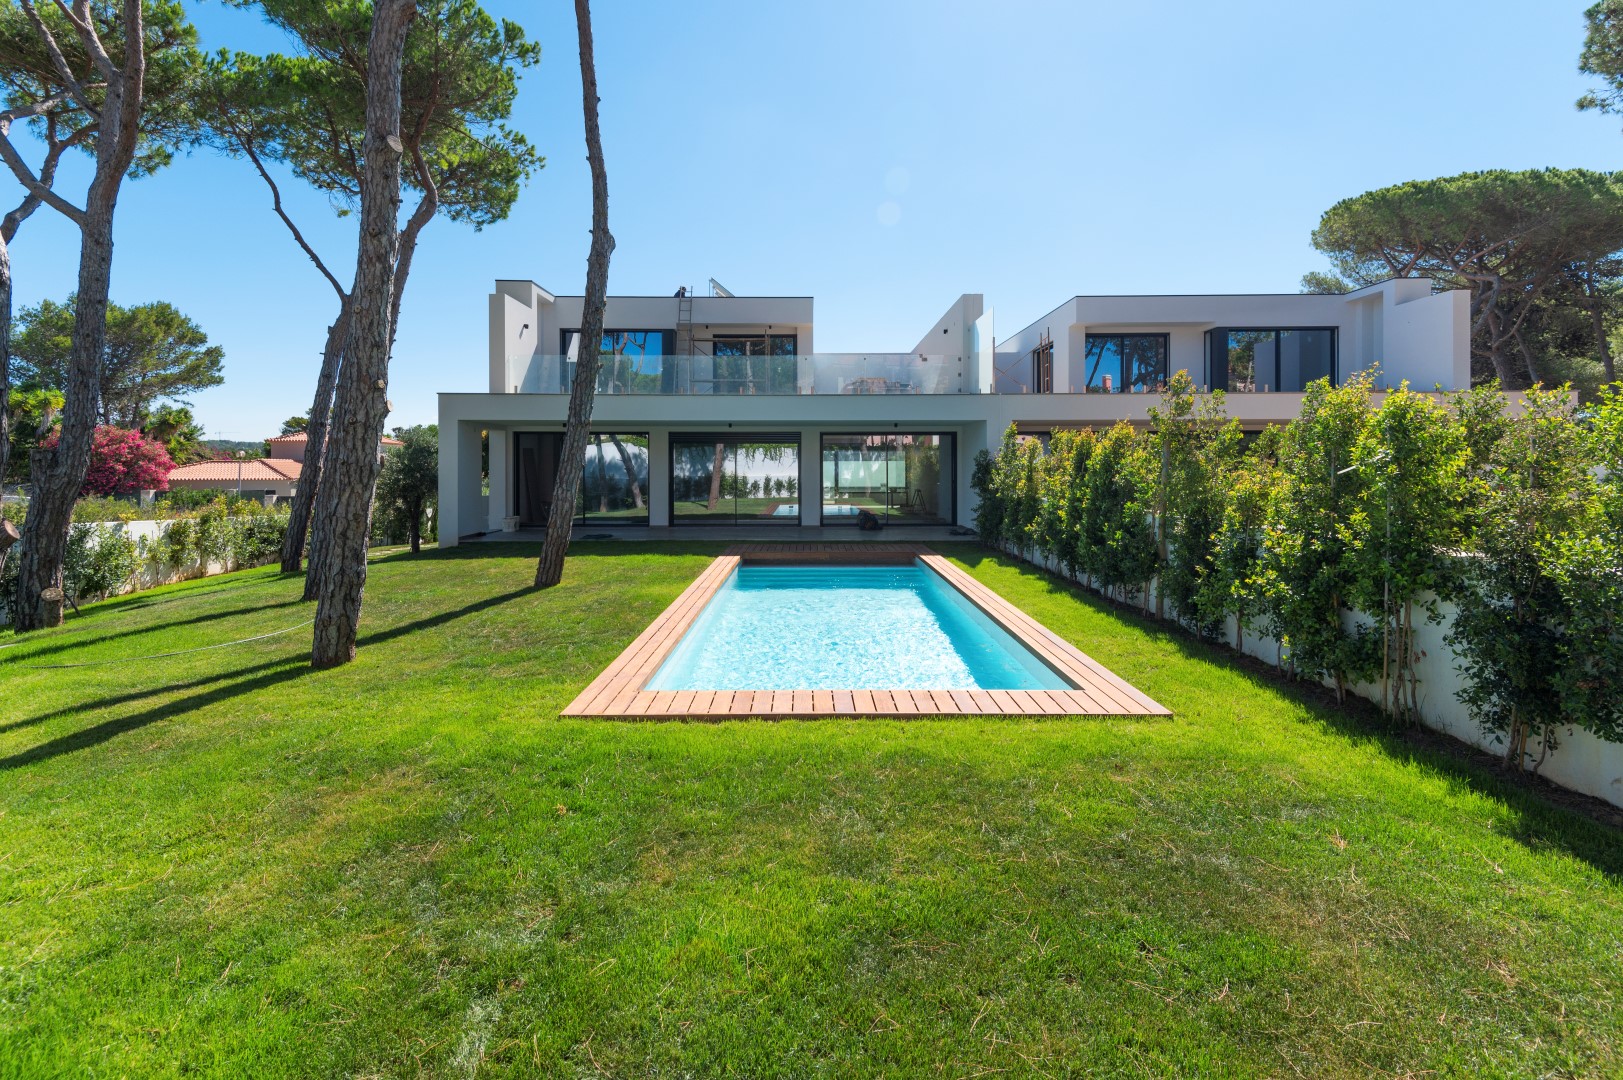 For Sale Detached Villa Birre Cascais Portugal Mor4030pd 001